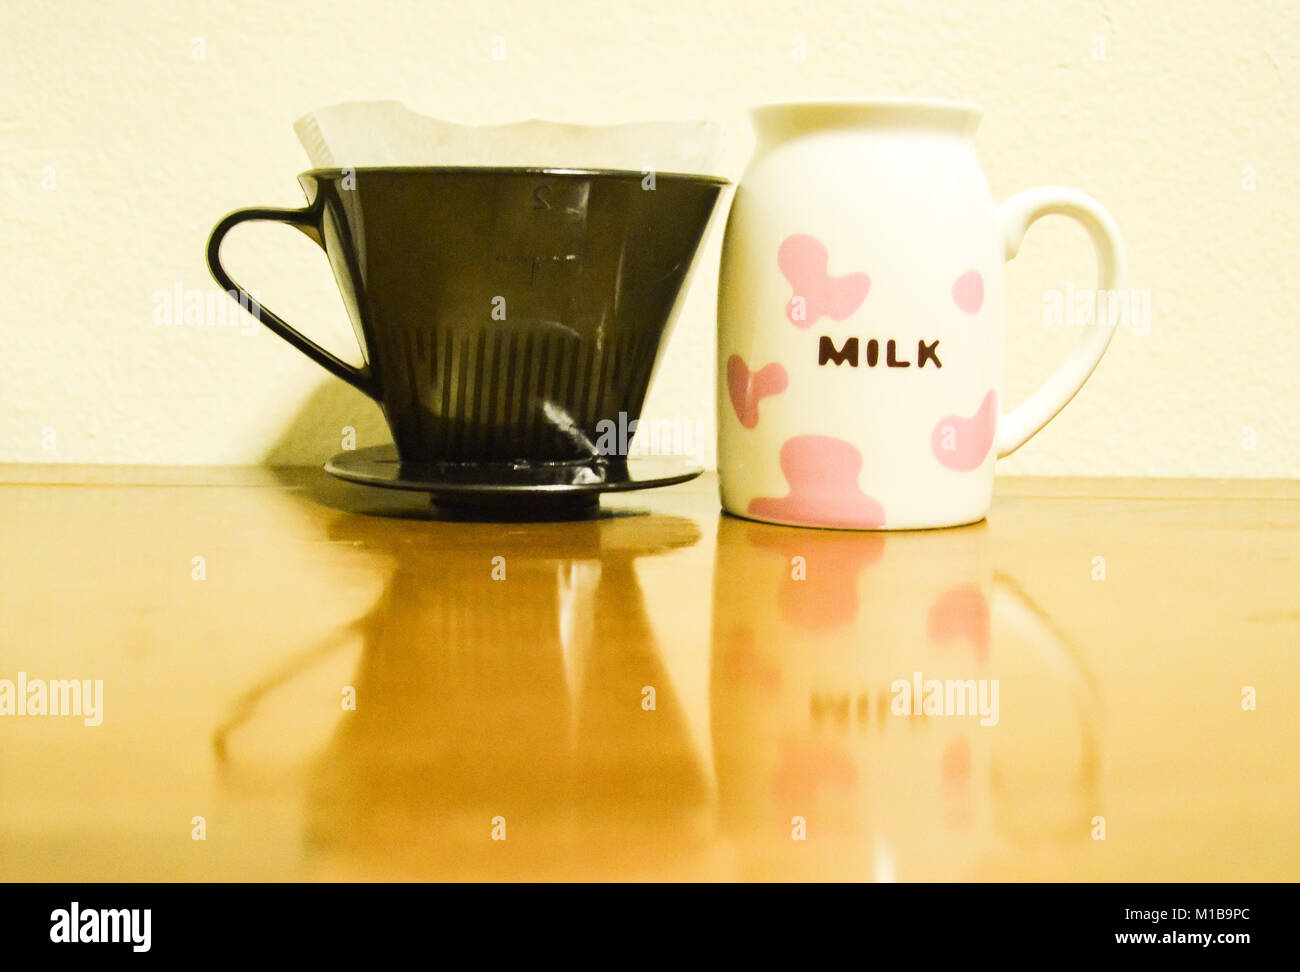 Una tazza di caffè con la parola "latte" scritto in essa accanto a un filtro da caffè. Un'immagine raffigurante ironia Foto Stock